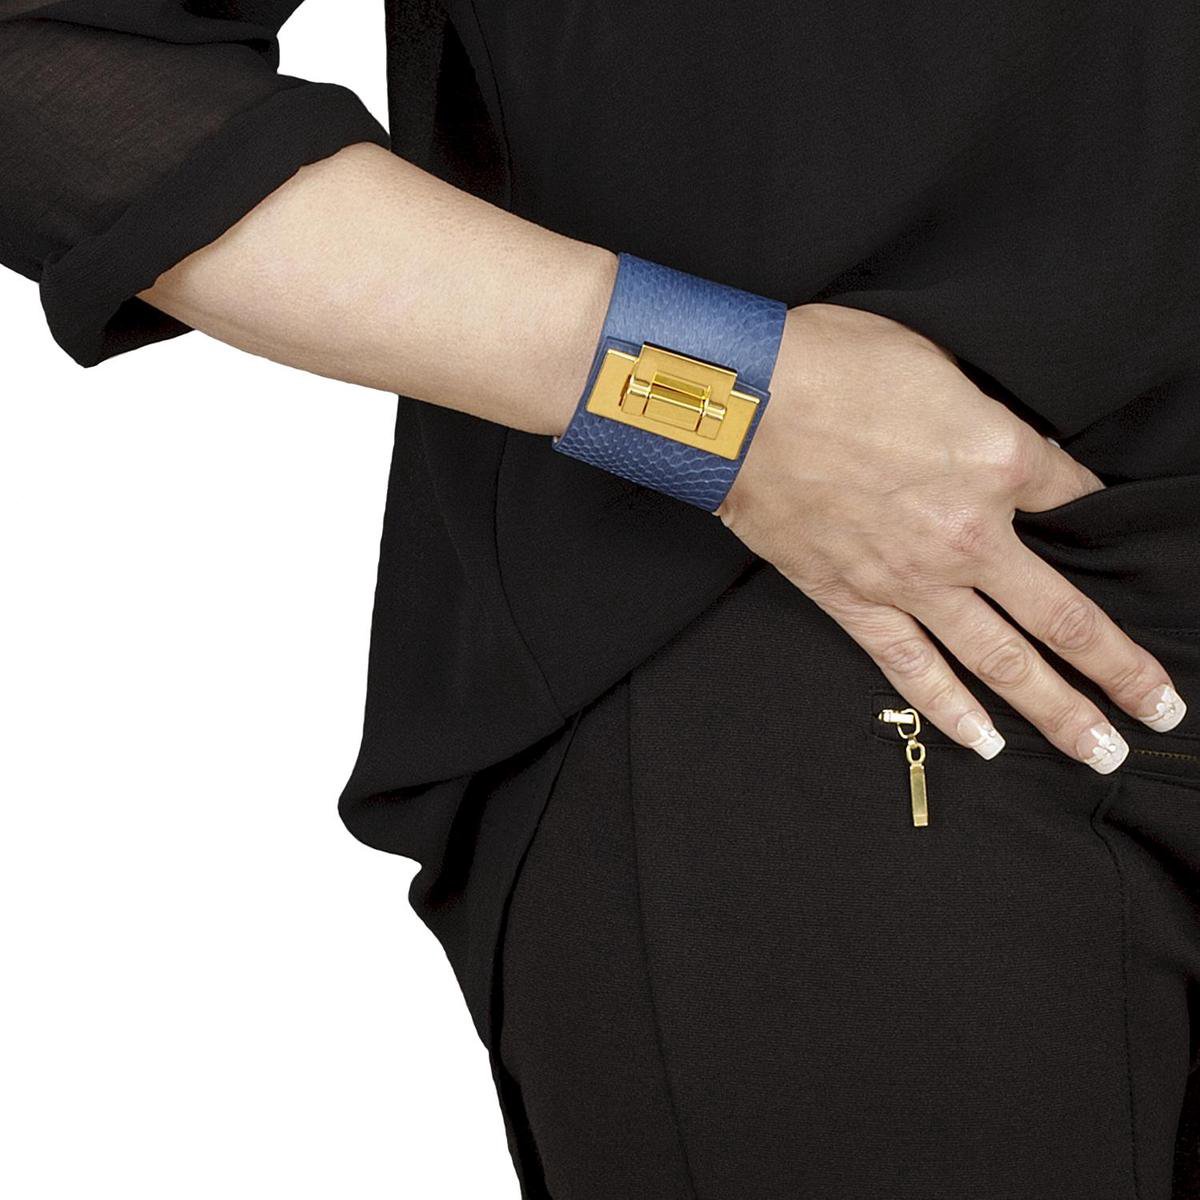 NEW SALE van 94,00 EUR afgeprijsd, BELUCIA dames armband ZK-03 kalfsleer mat blauw, goudkleurig, maat 17 cm